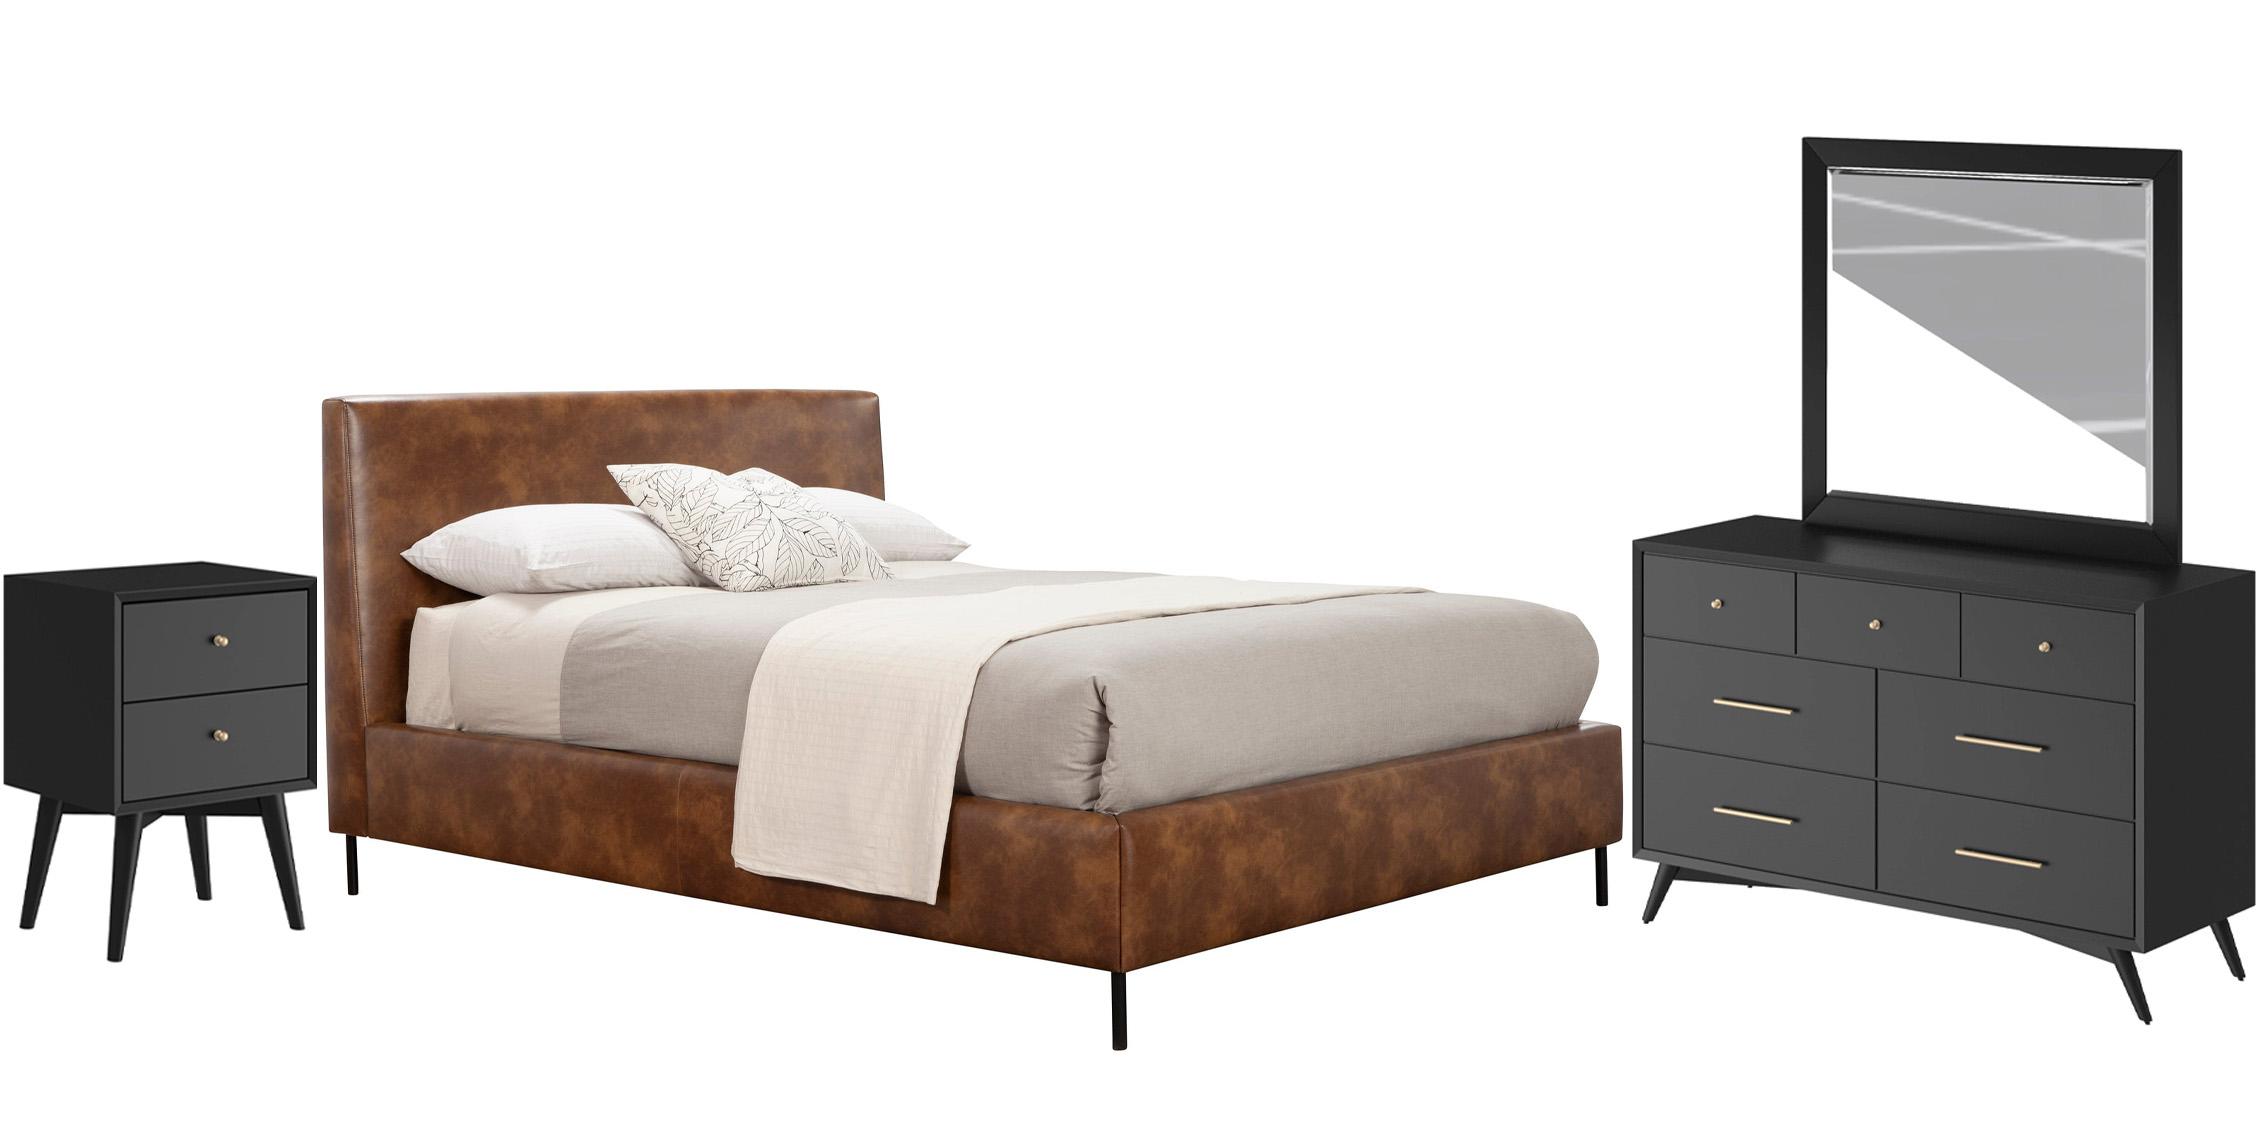 Modern, Rustic Platform Bedroom Set SOPHIA/FLYNN 6902EK-BRN-Set-4-BLK in Brown, Black Faux Leather